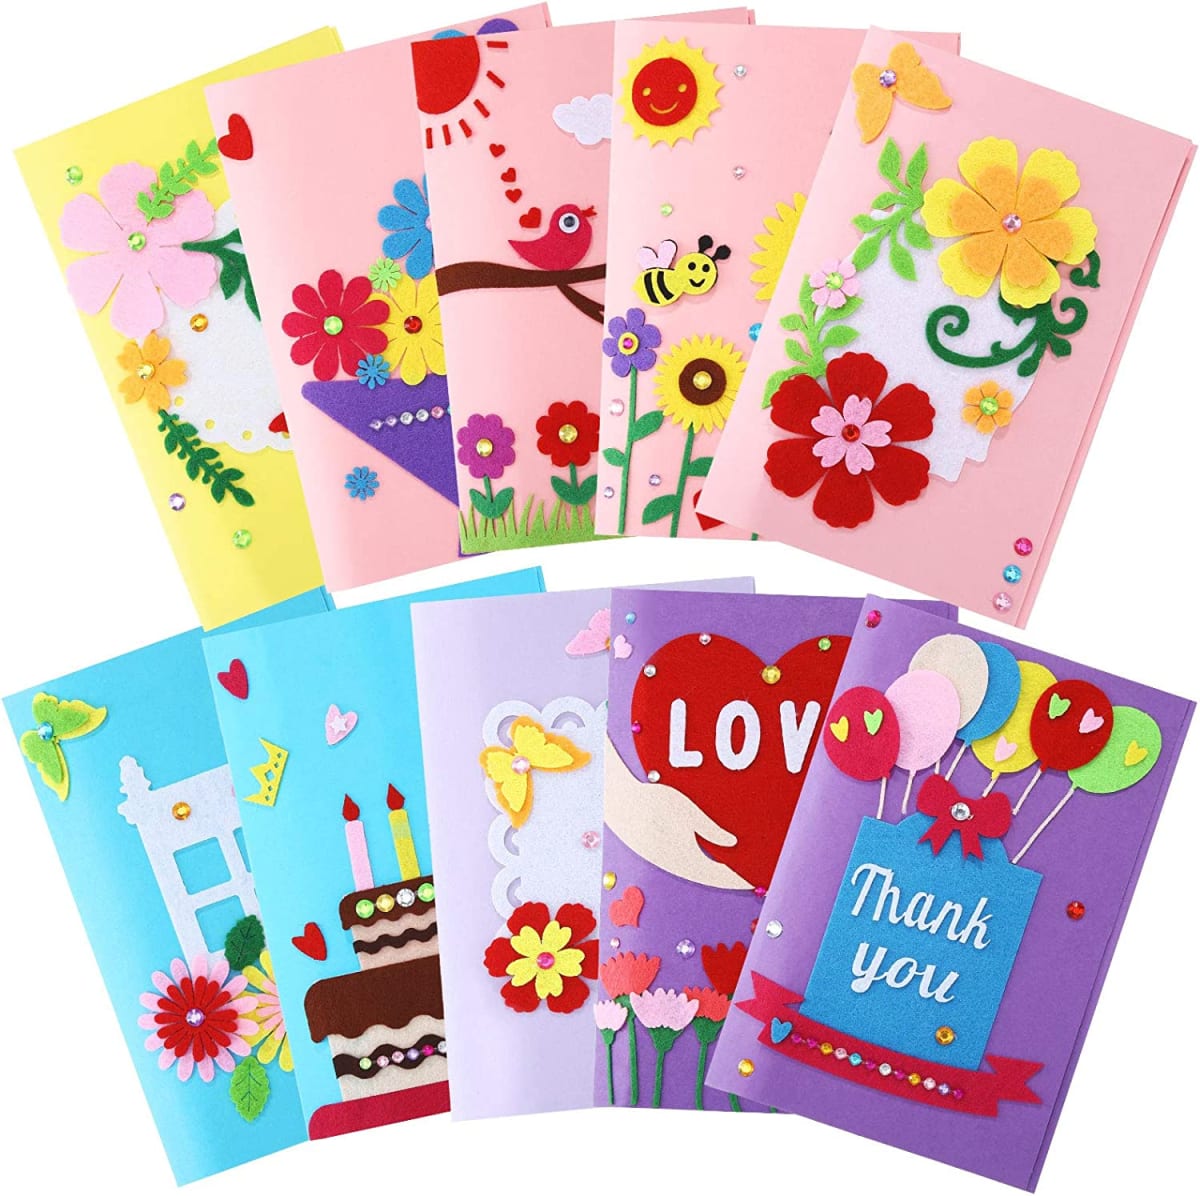 10 Pieces Greeting Card Making Kit